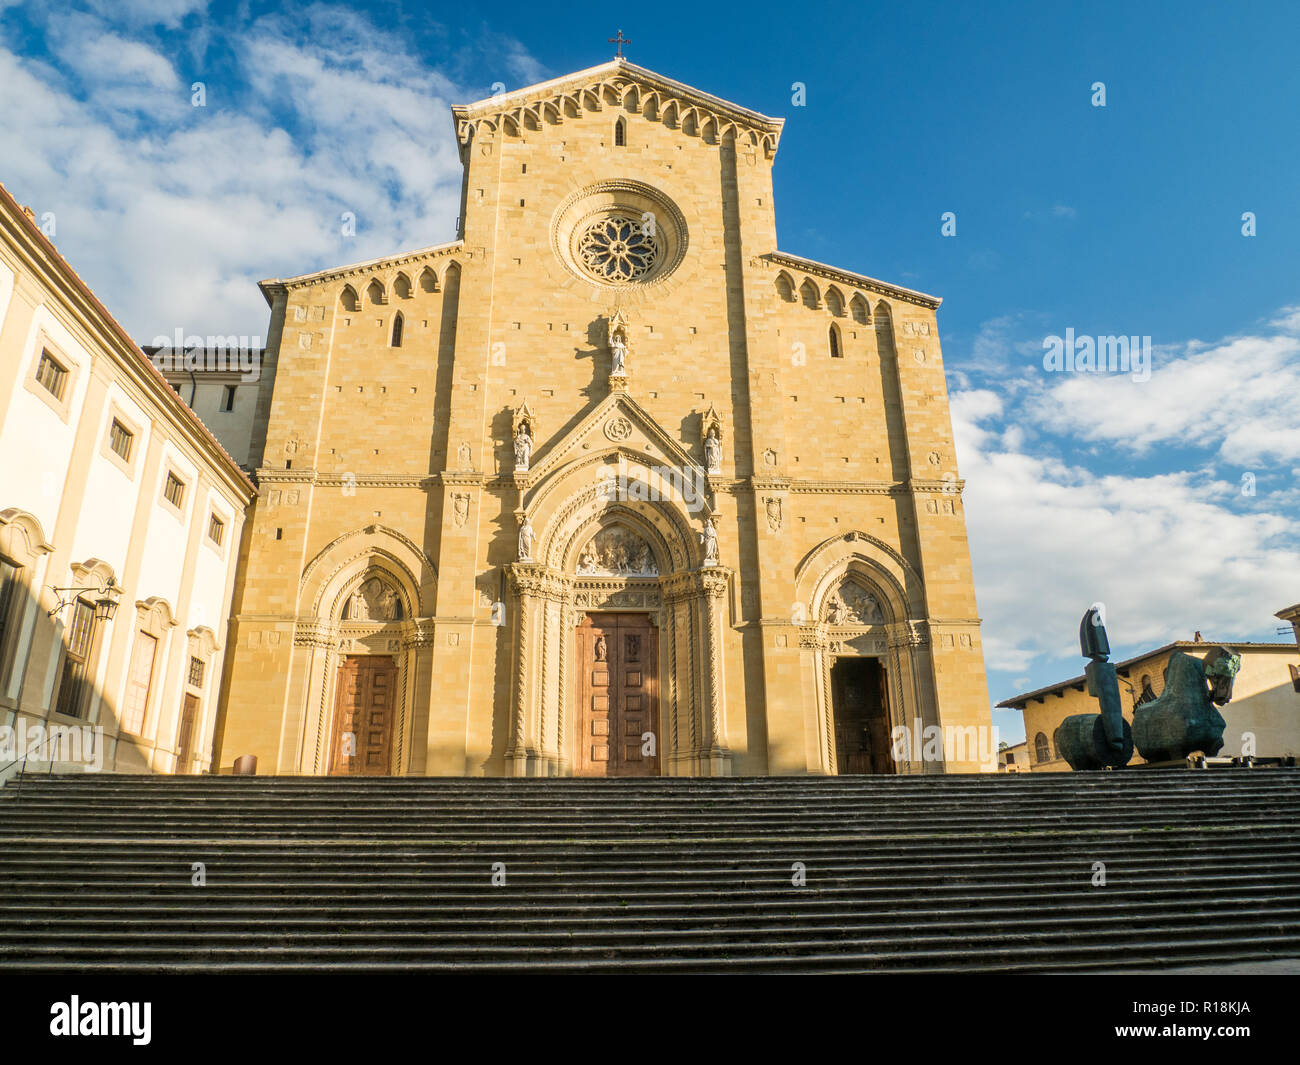 Catholique romaine gothique Cathédrale des Saints Pierre & Donato dans la ville d'Arezzo, Toscane, Italie, avec une statue de cheval en bronze (à droite) Banque D'Images